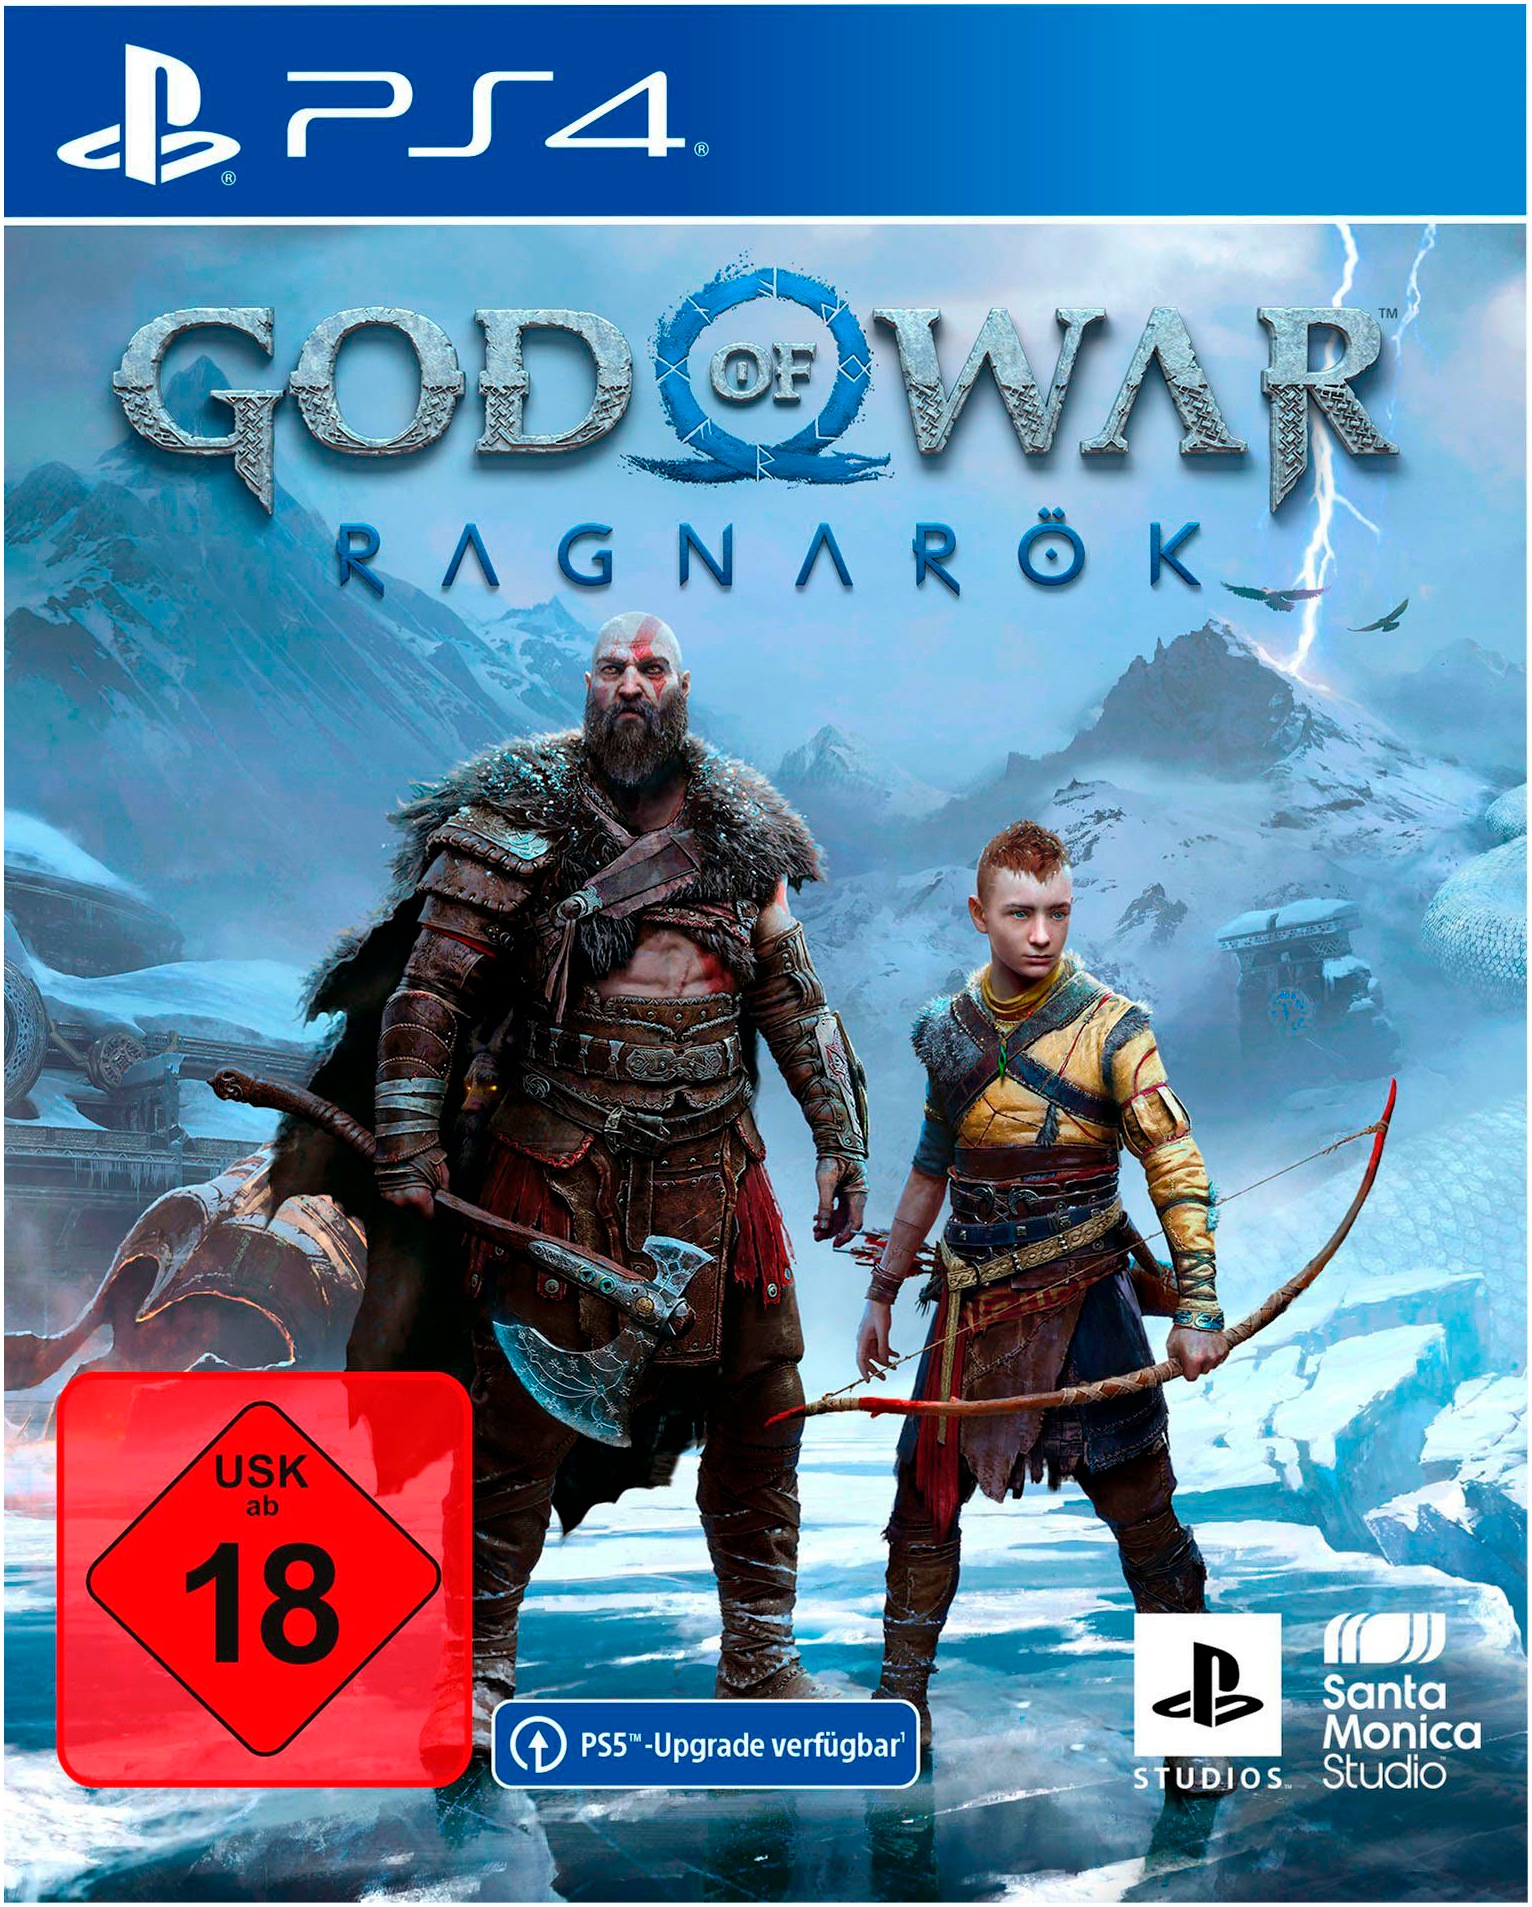 PlayStation 4 Spielekonsole »Slim + God of War Ragnarök«